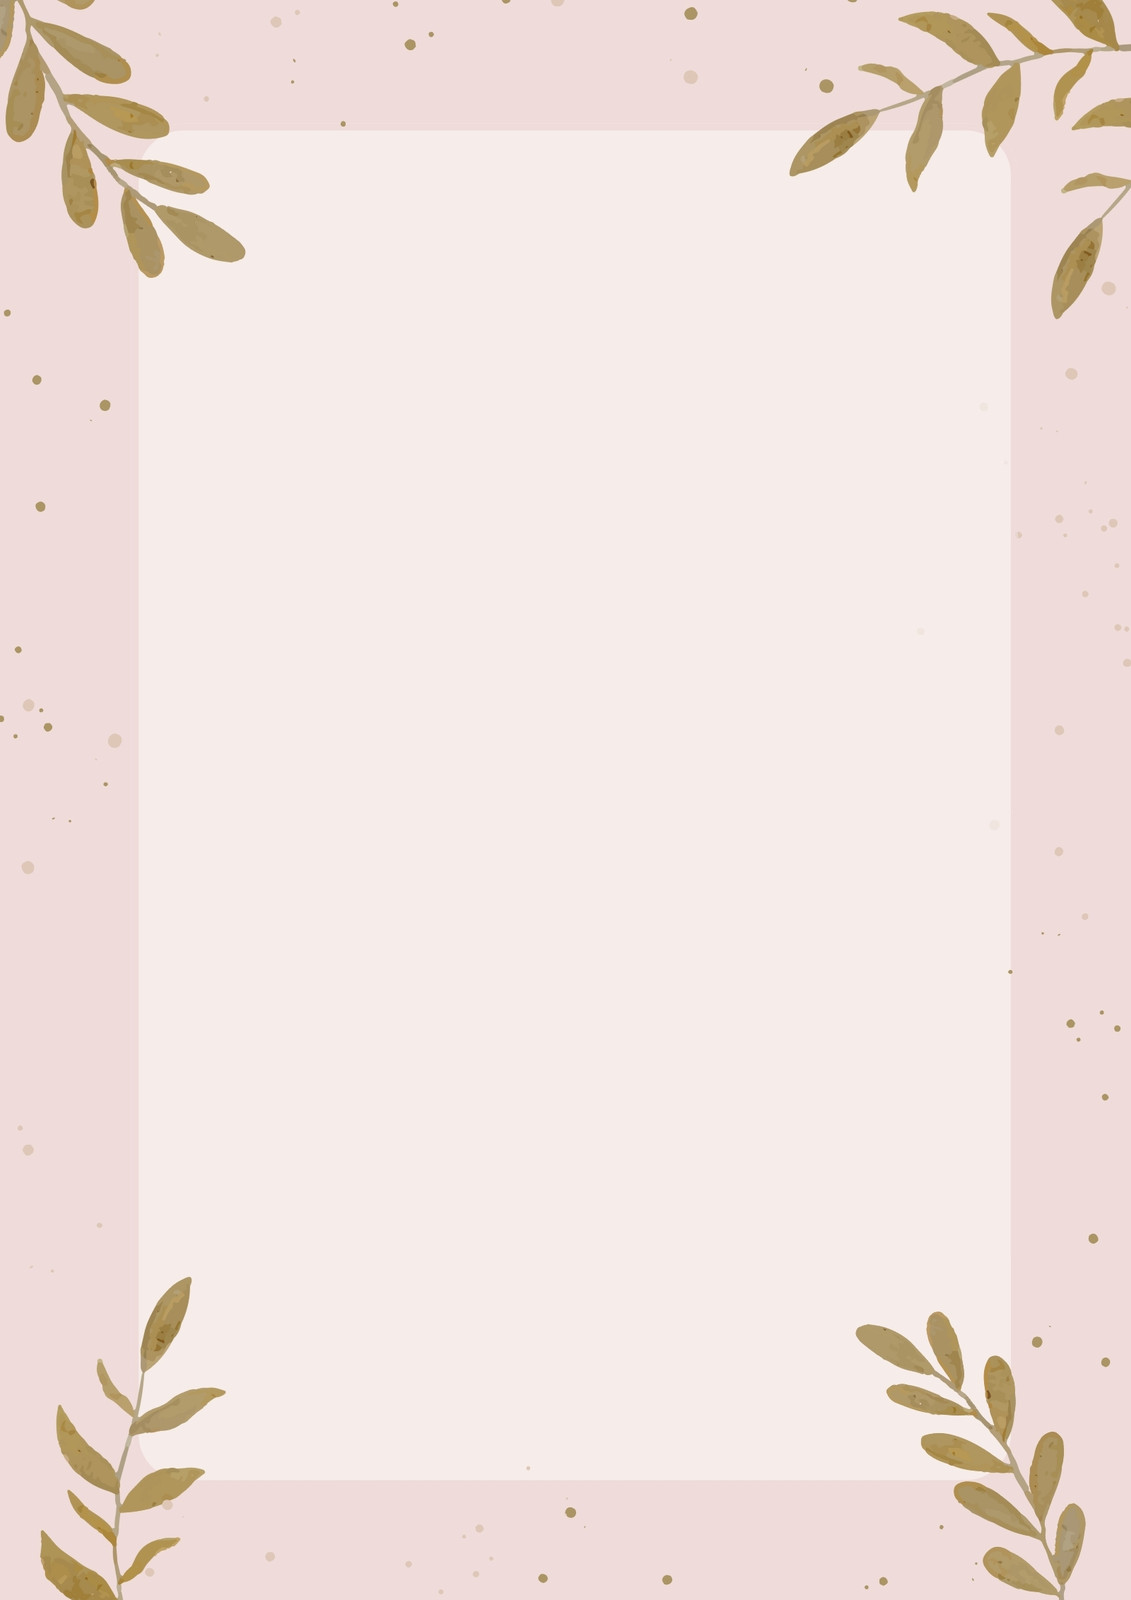 Mau nen hong (pink background) - Màu hồng là một màu sắc trẻ trung và đáng yêu, phù hợp cho tài liệu liên quan đến các chủ đề như hôn nhân, tình yêu hoặc trẻ em. Hãy xem ảnh mau nen hong để tìm các tùy chọn thiết kế nền tảng hồng phù hợp với phong cách của bạn.